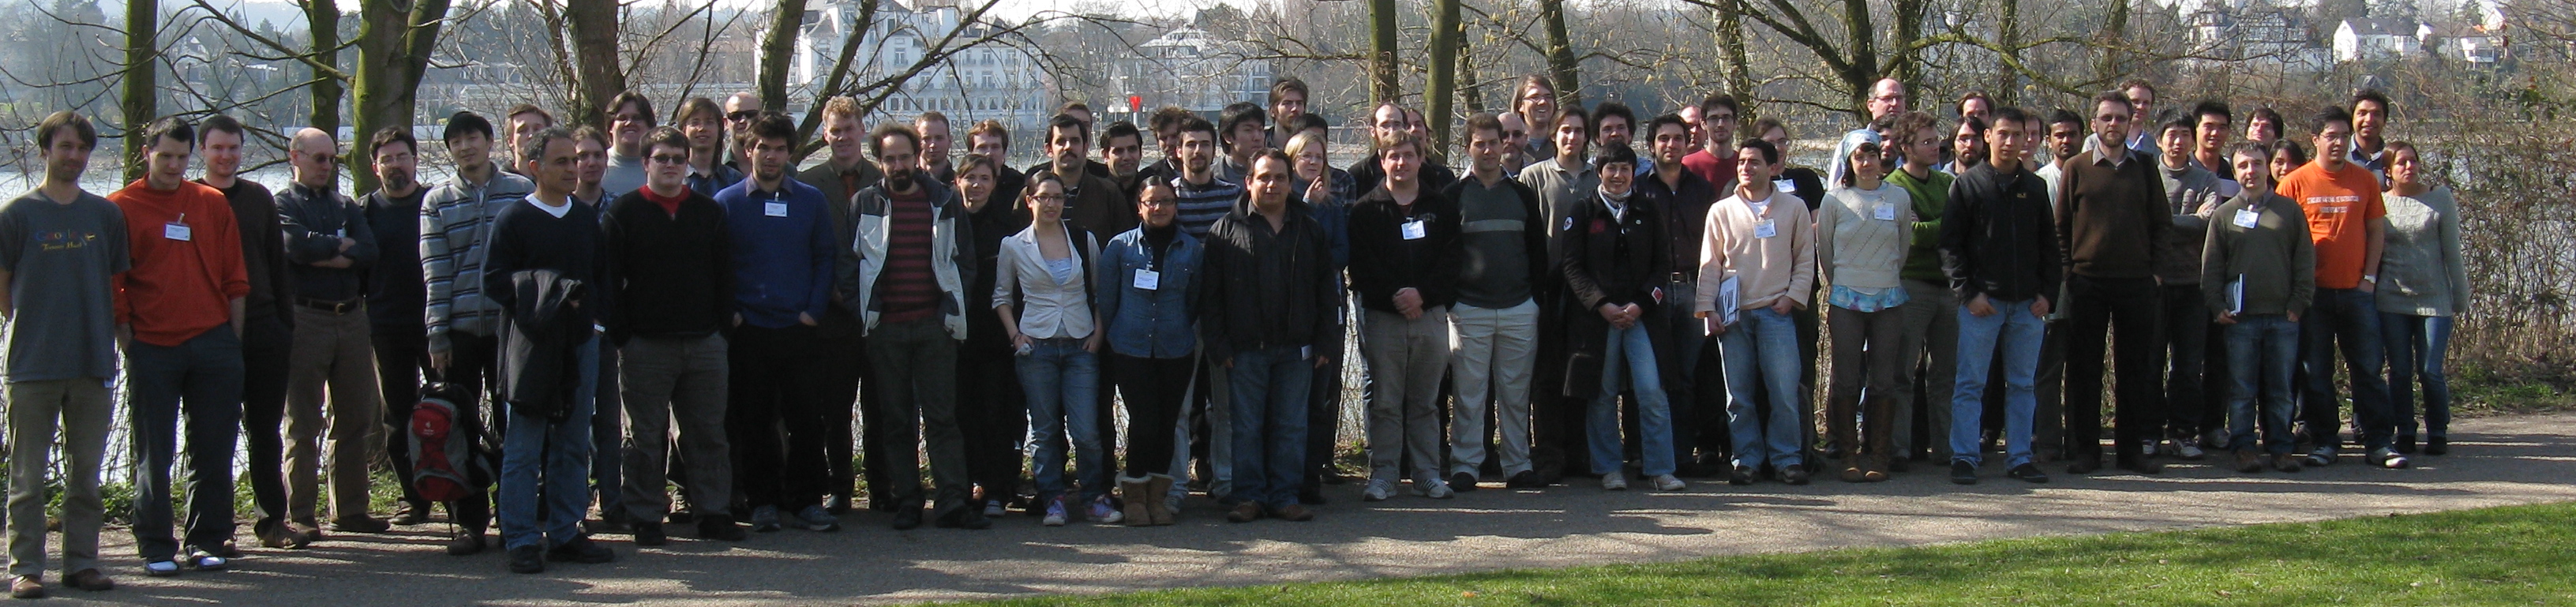 group picture YST 2011 Bonn